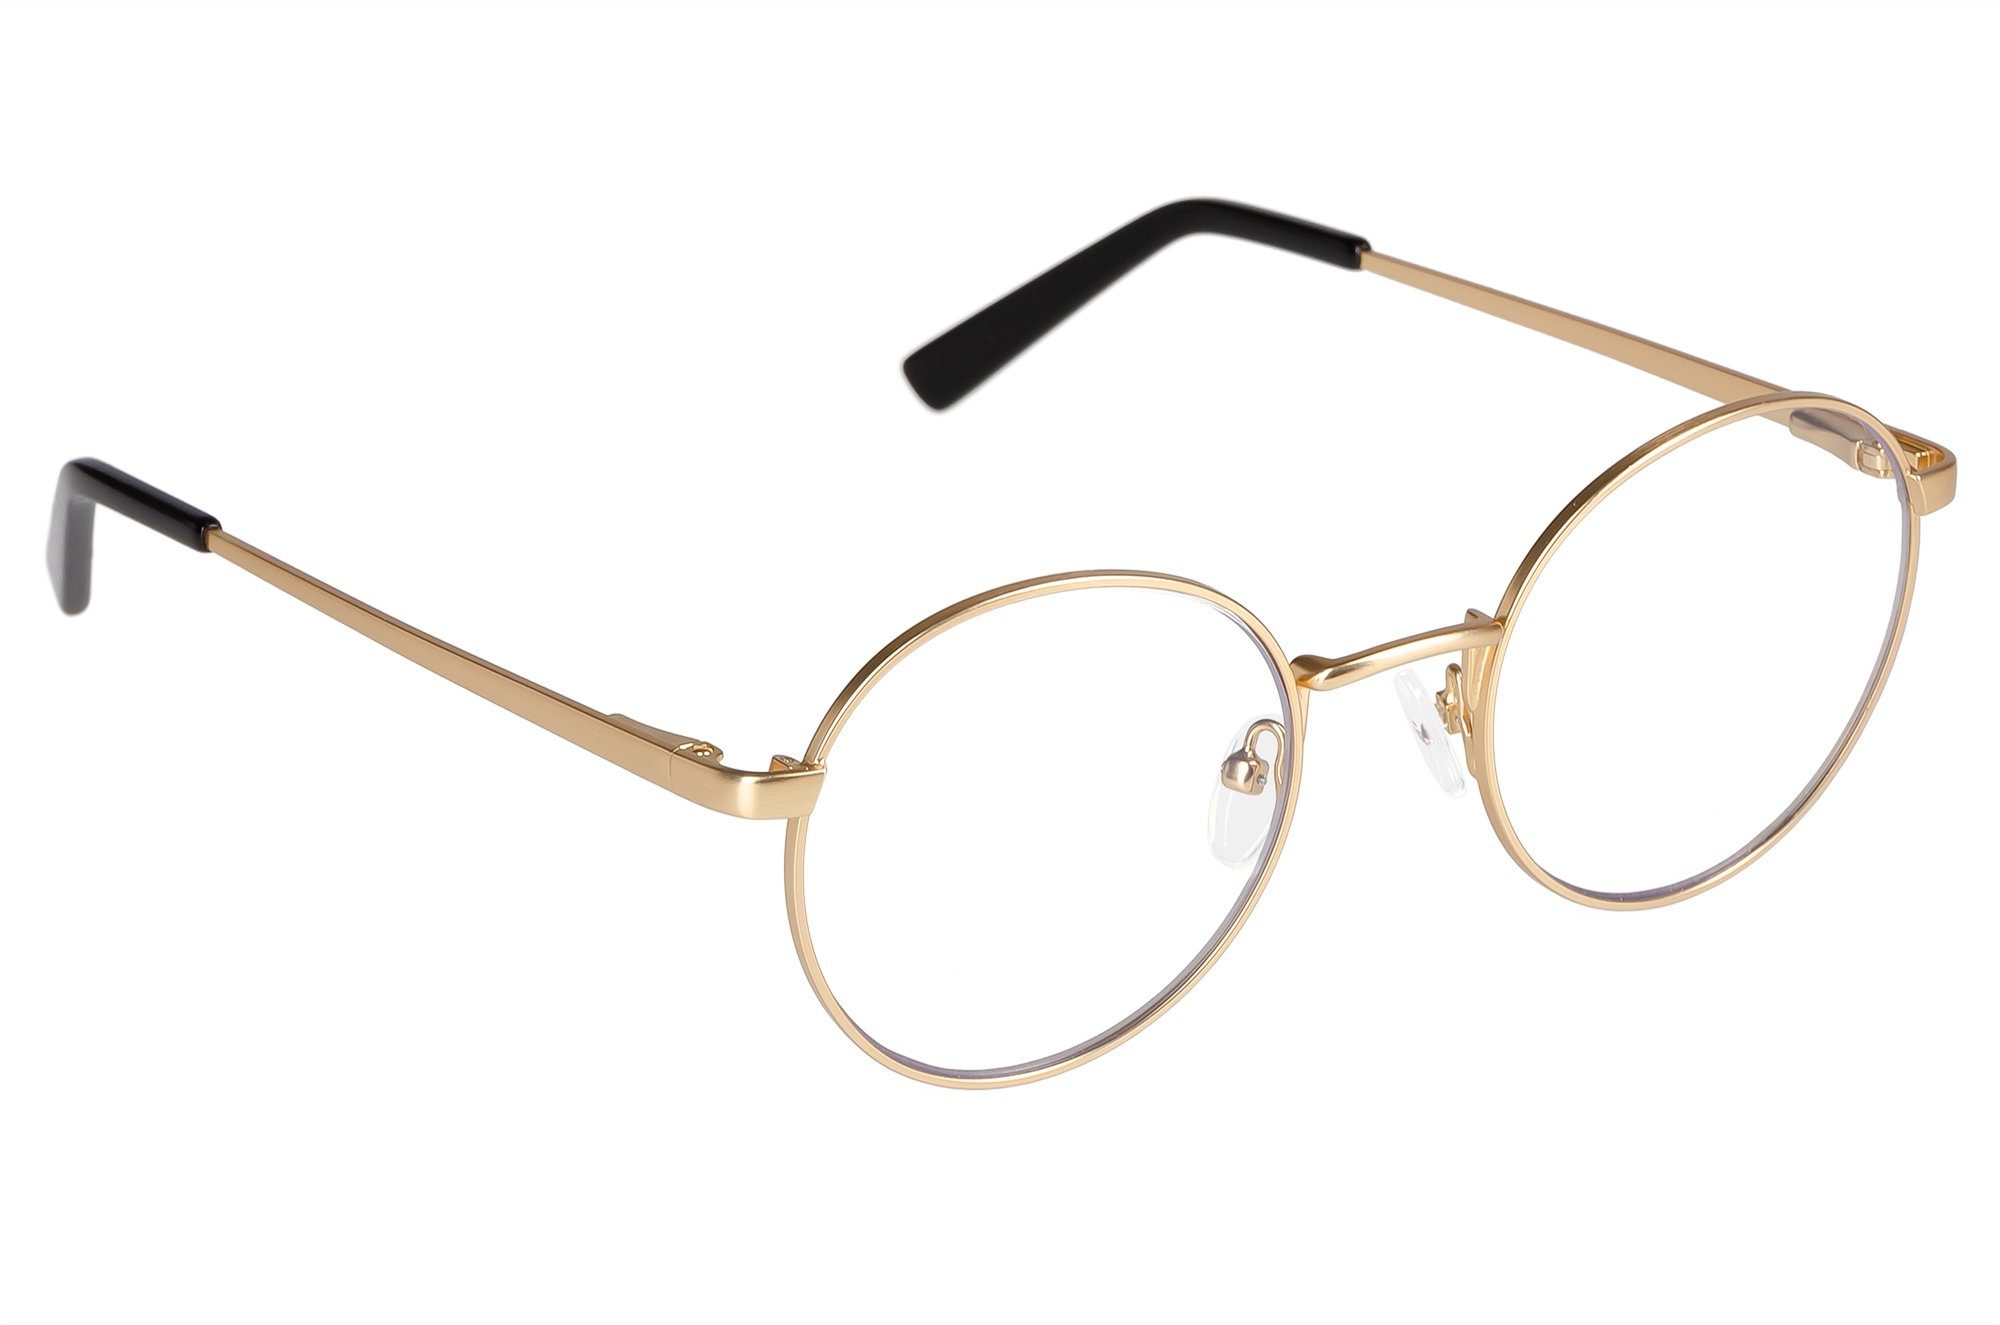 Edison & King Lesebrille Delight, runde Brille im Retro-Stil Gold-Antique